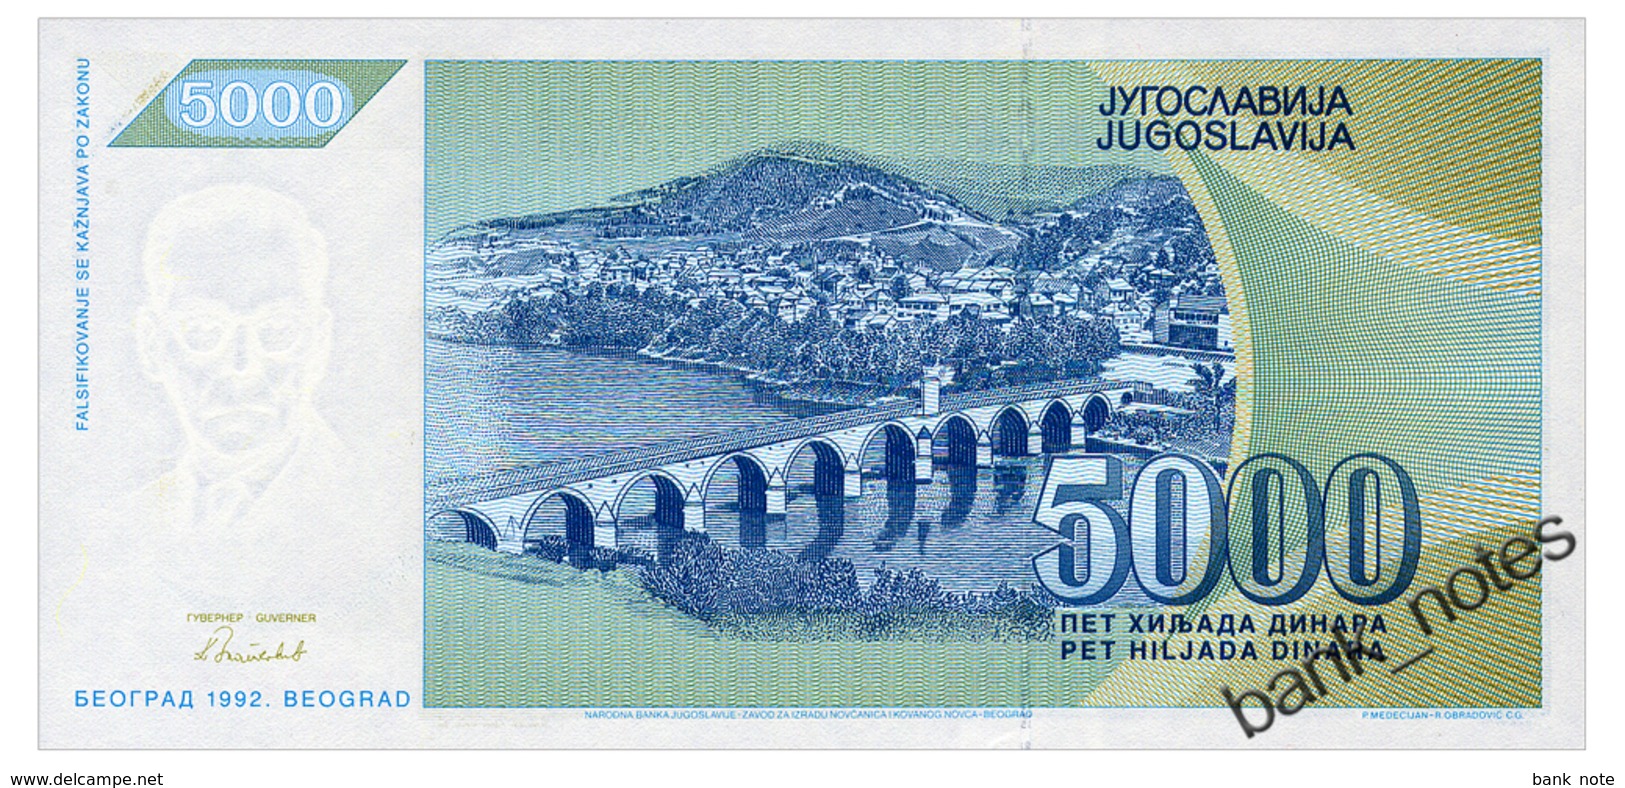 YUGOSLAVIA 5000 DINARA 1992 Pick 115 Unc - Yugoslavia